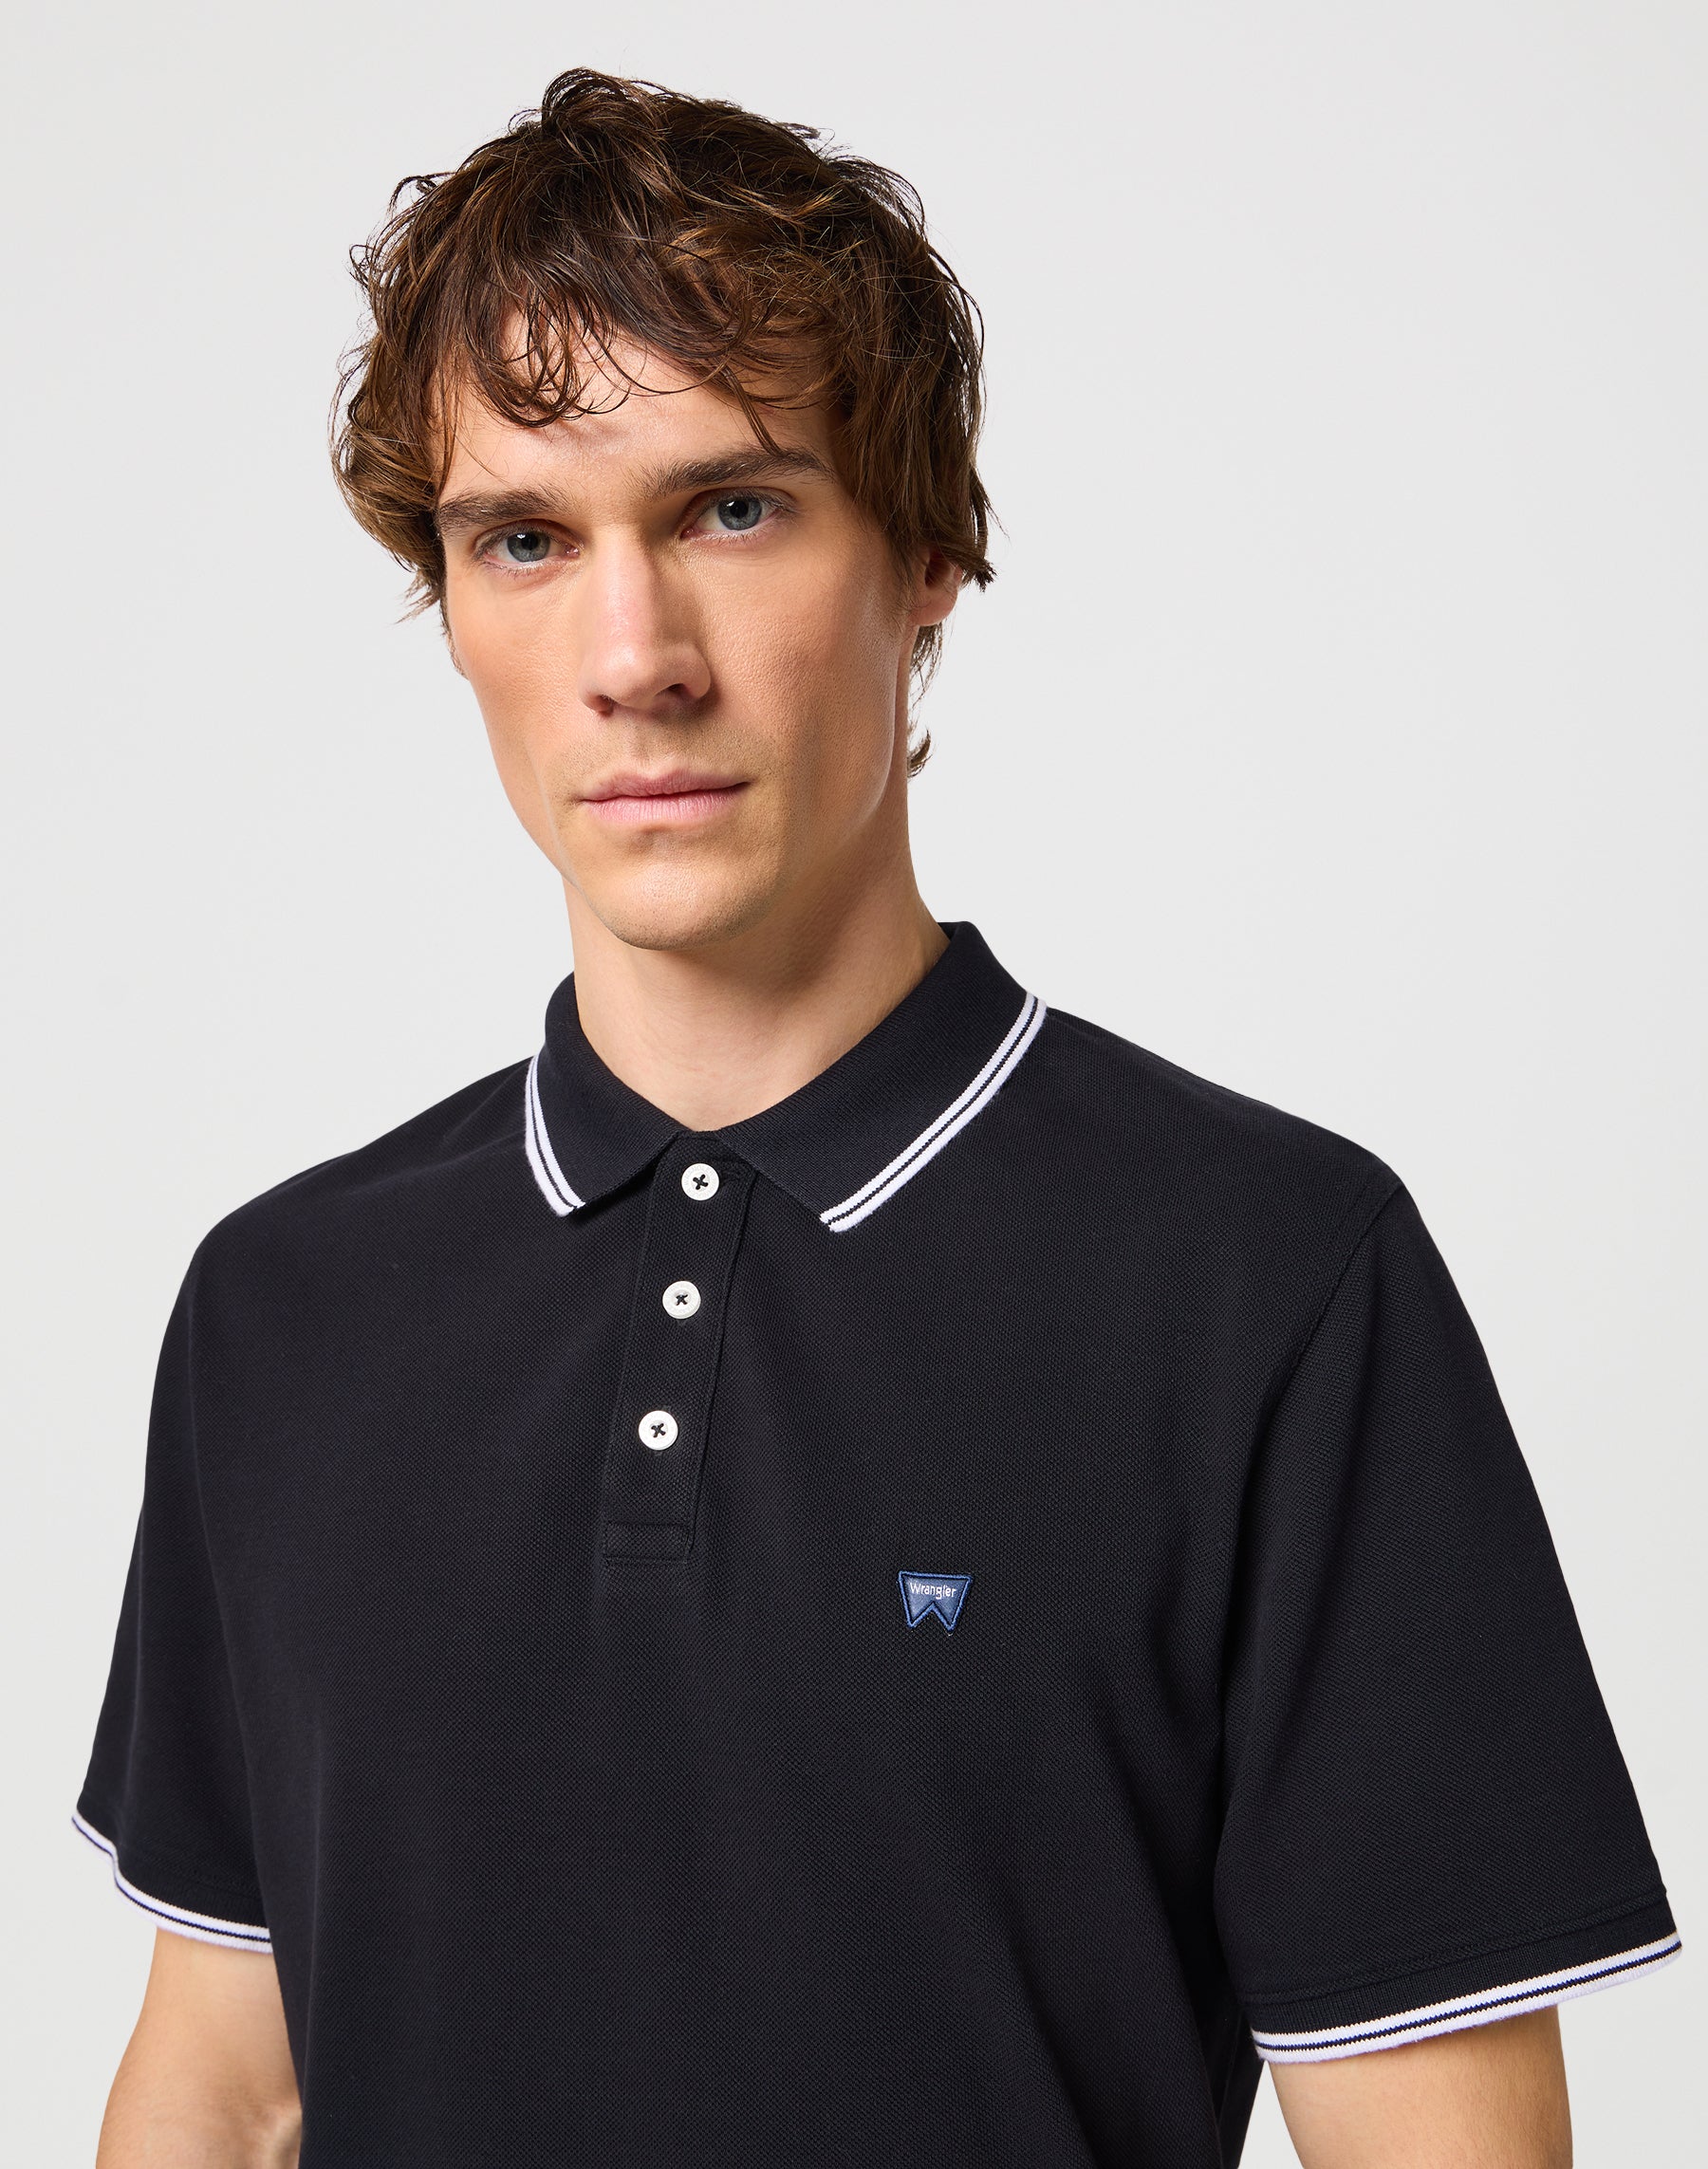 Polo Shirt in Black Polos Wrangler   